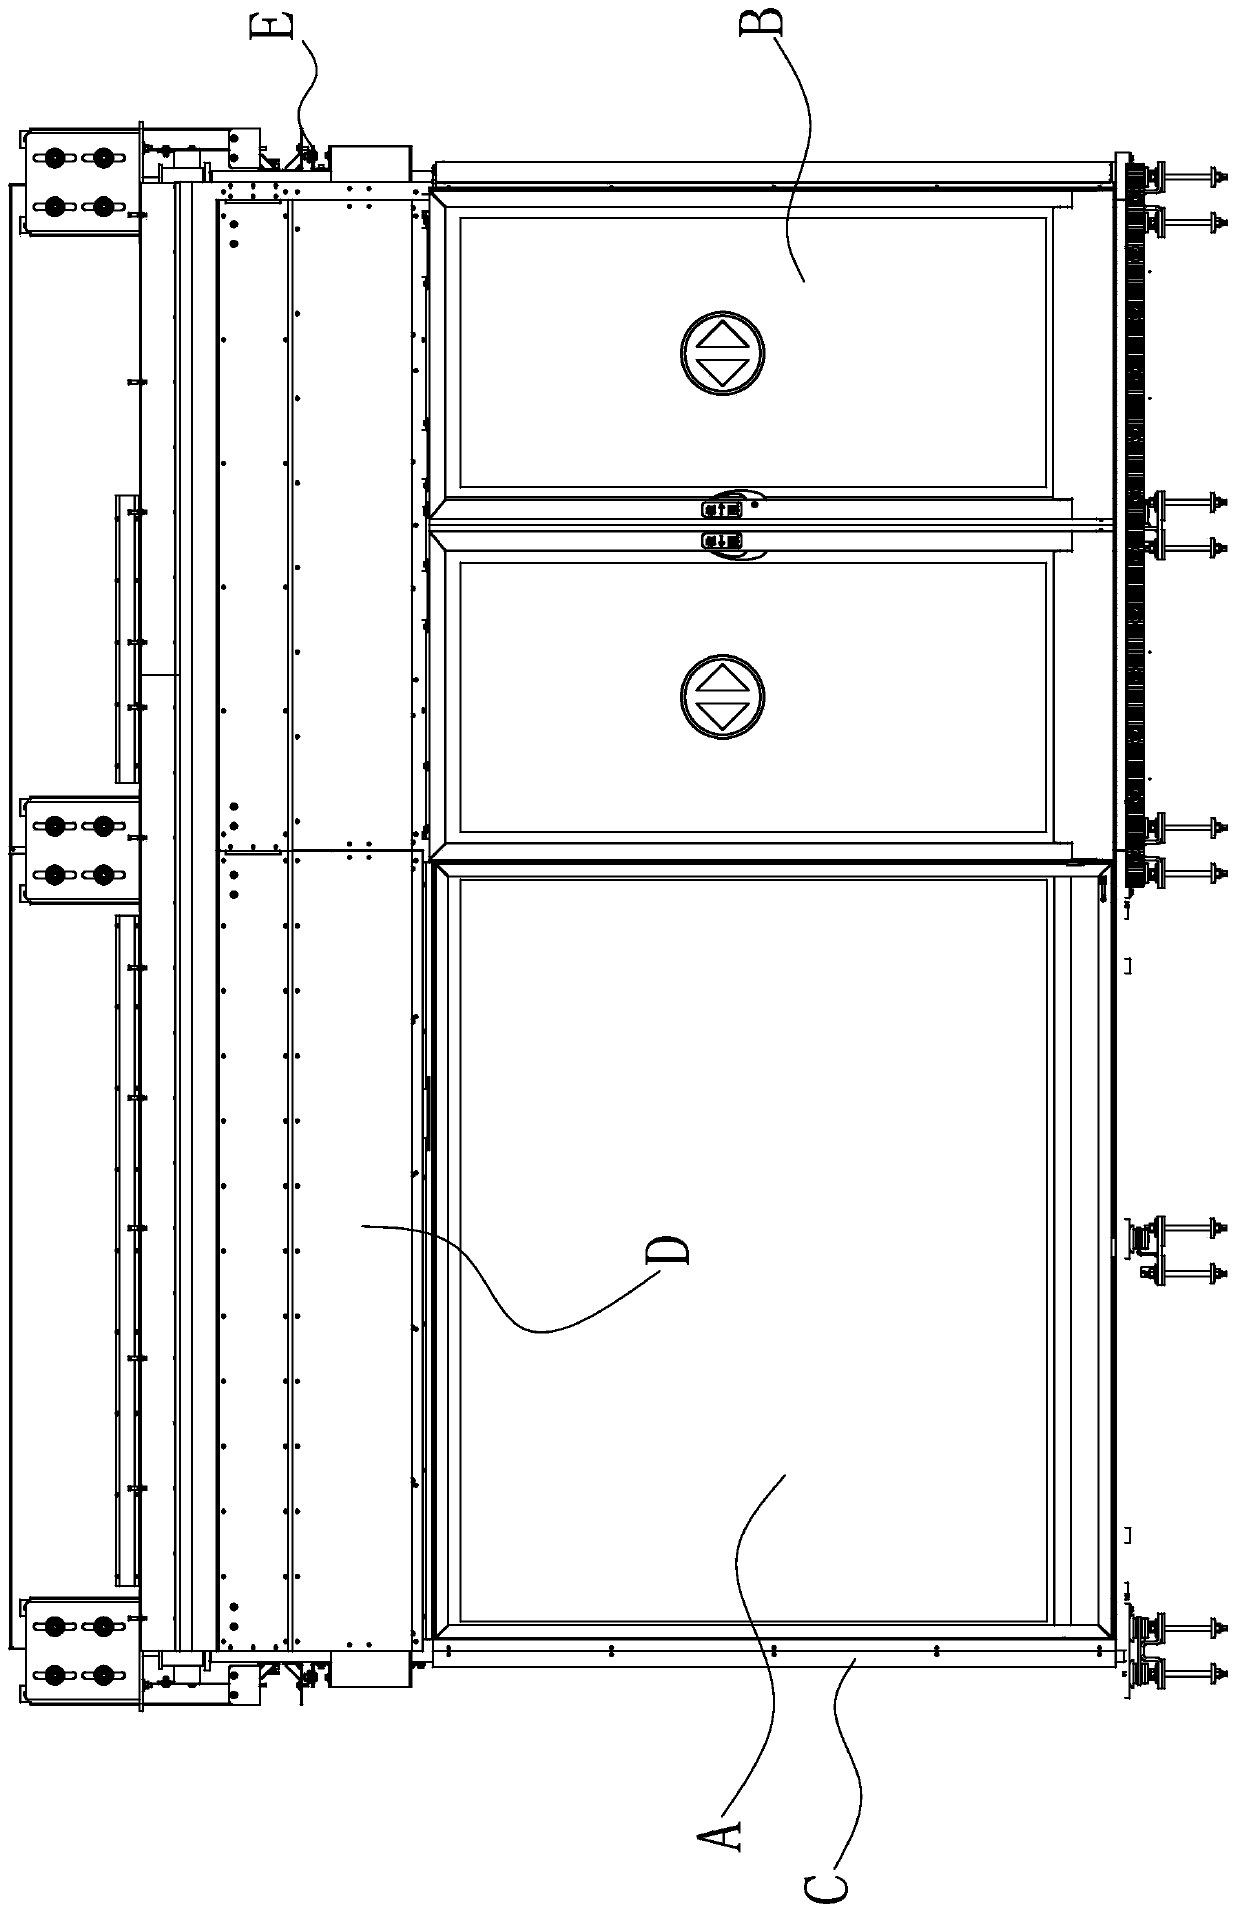 Modular platform door